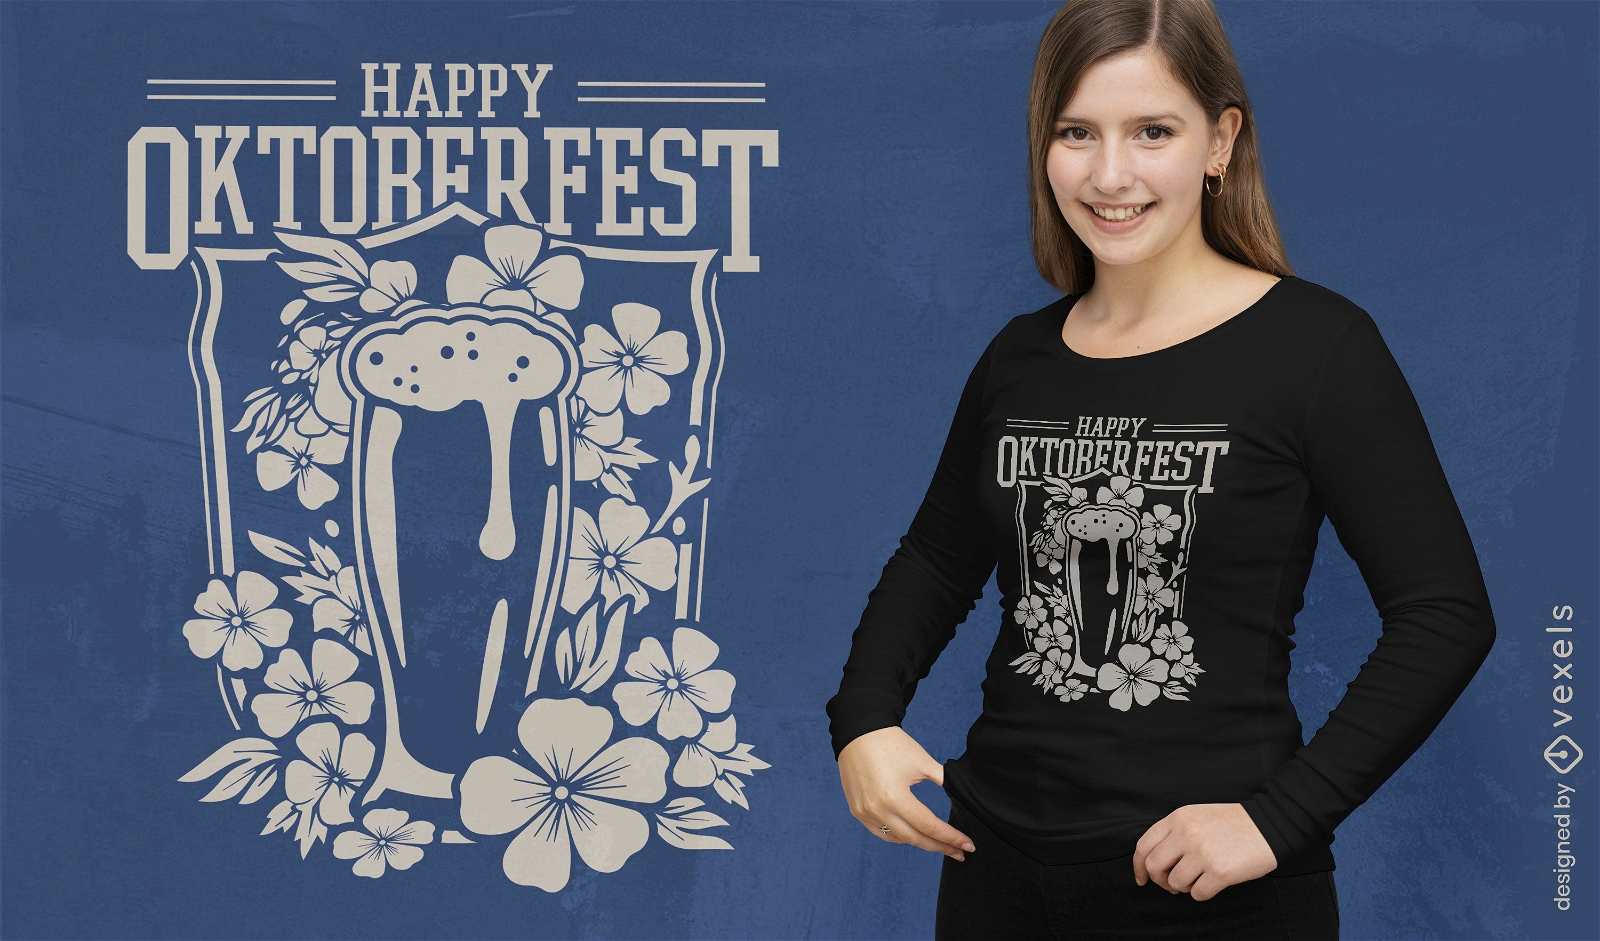 Diseño floral de camiseta de oktoberfest